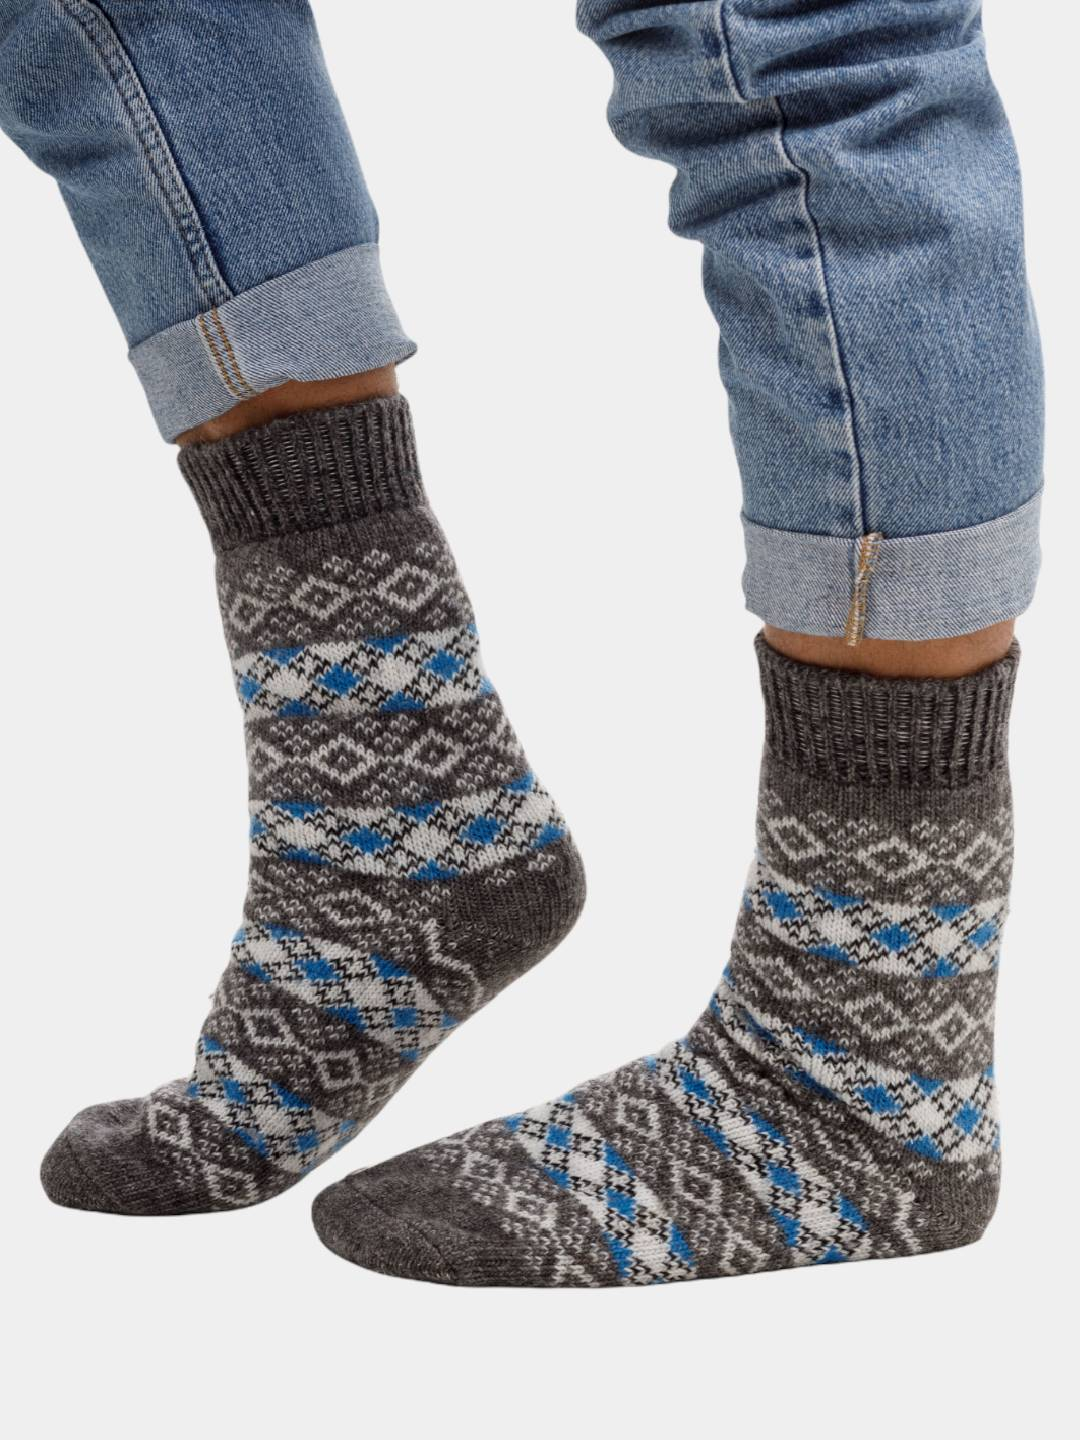 Носки мужские шерстяные. World Woolly купить по цене 365 ₽ винтернет-магазине KazanExpress